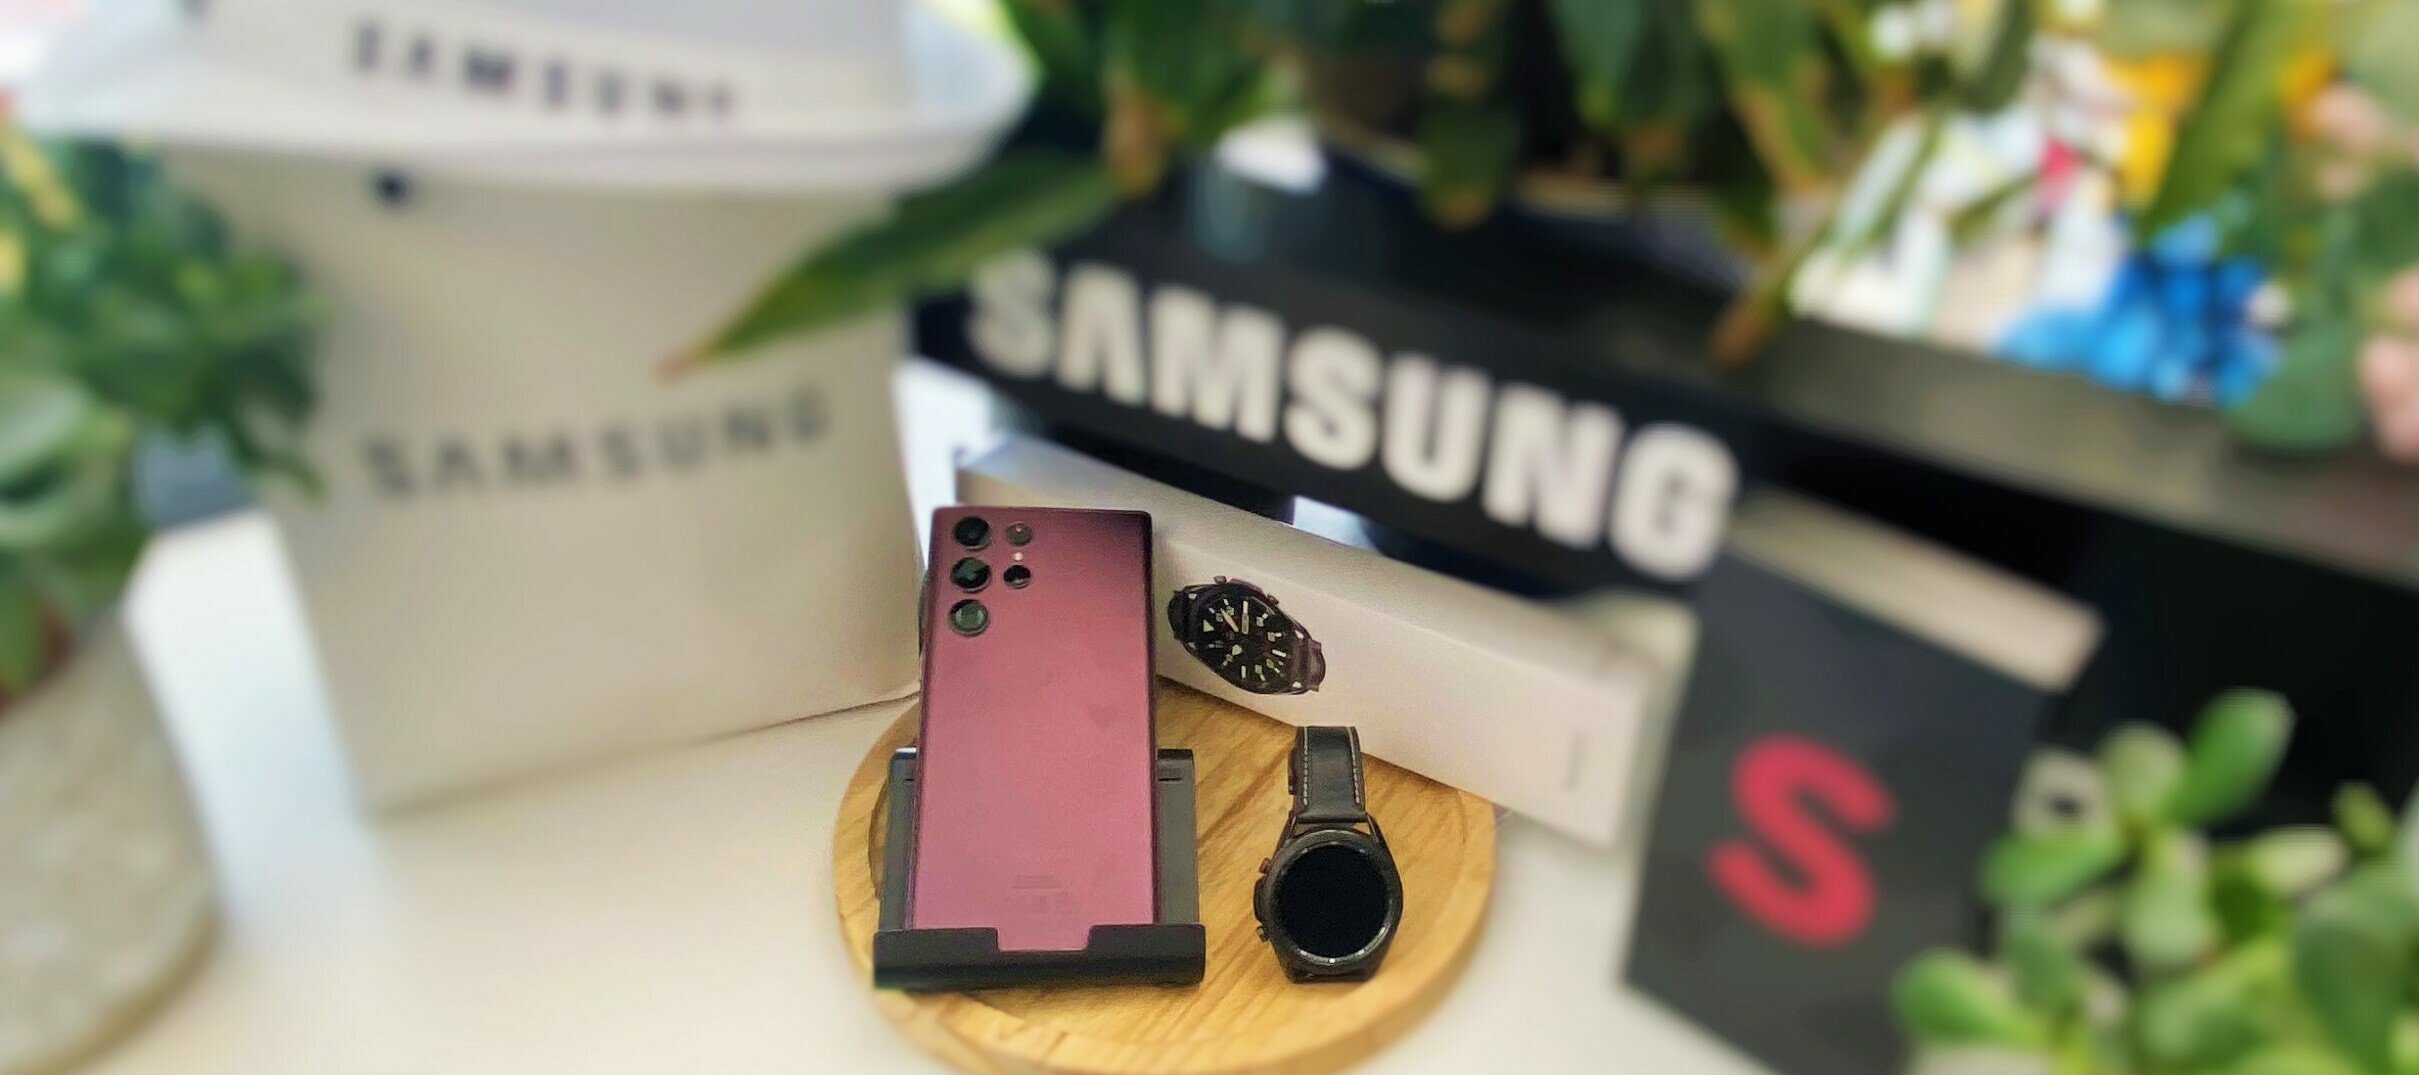 Samsung Galaxy S22 Ultra 5G + Samsung Galaxy Watch 3 - das Bundle für deinen Test in unserer Community!